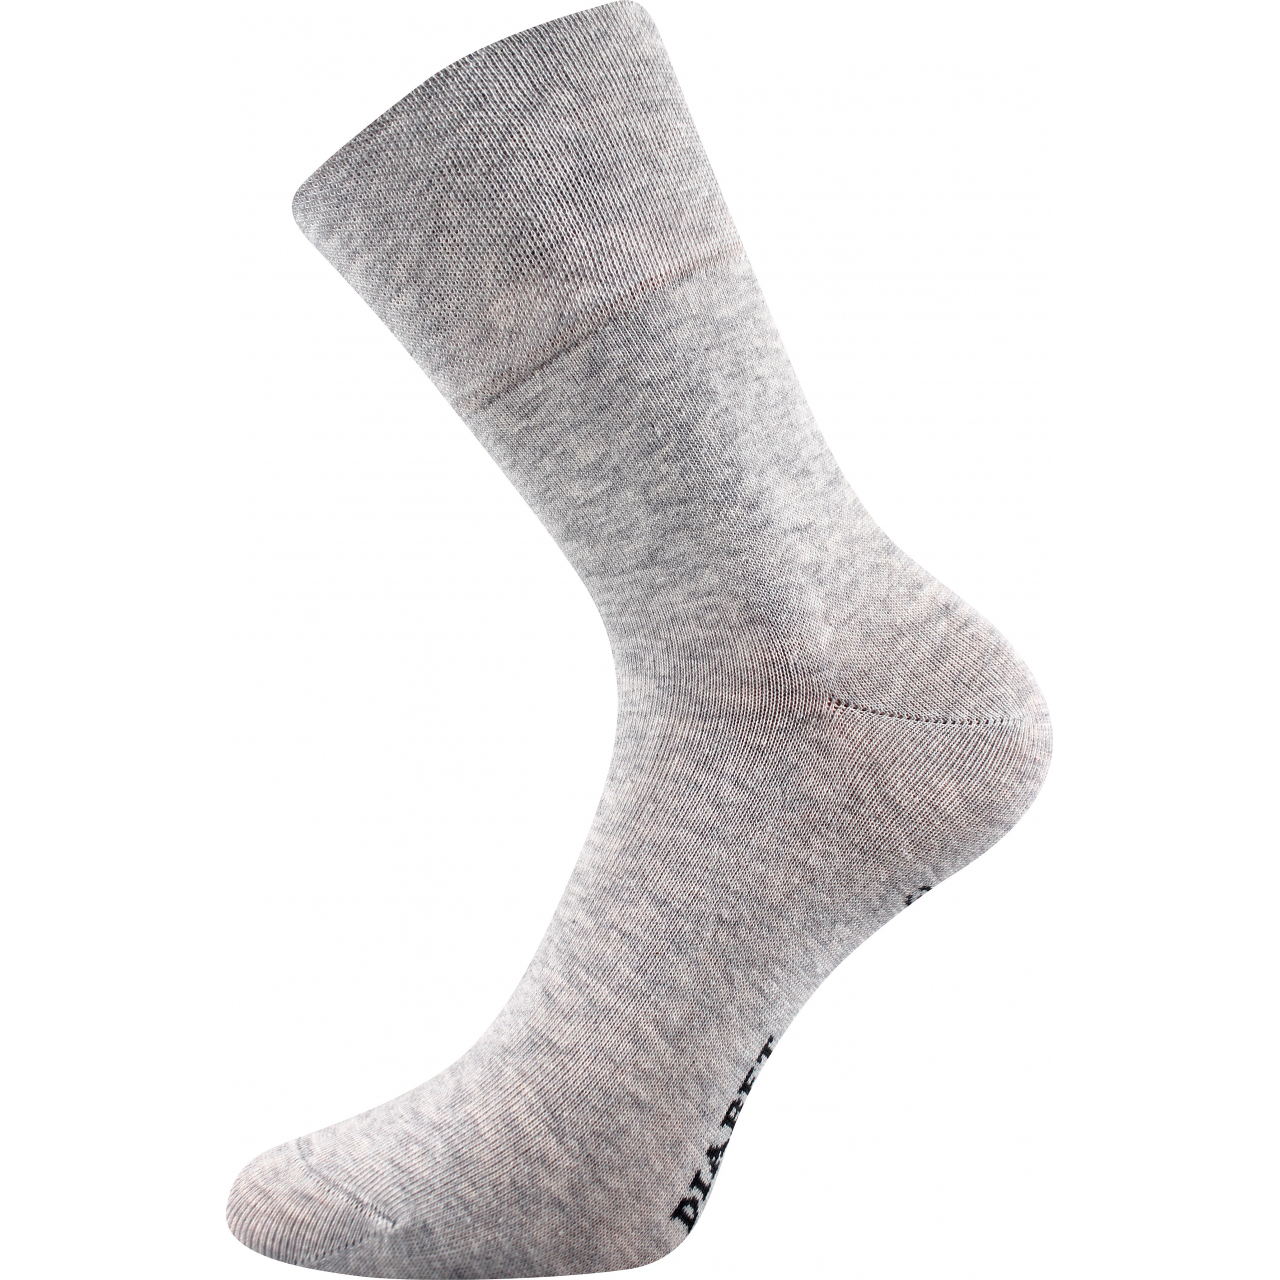 Ponožky klasické unisex Lonka Diagram - šedé, 43-46